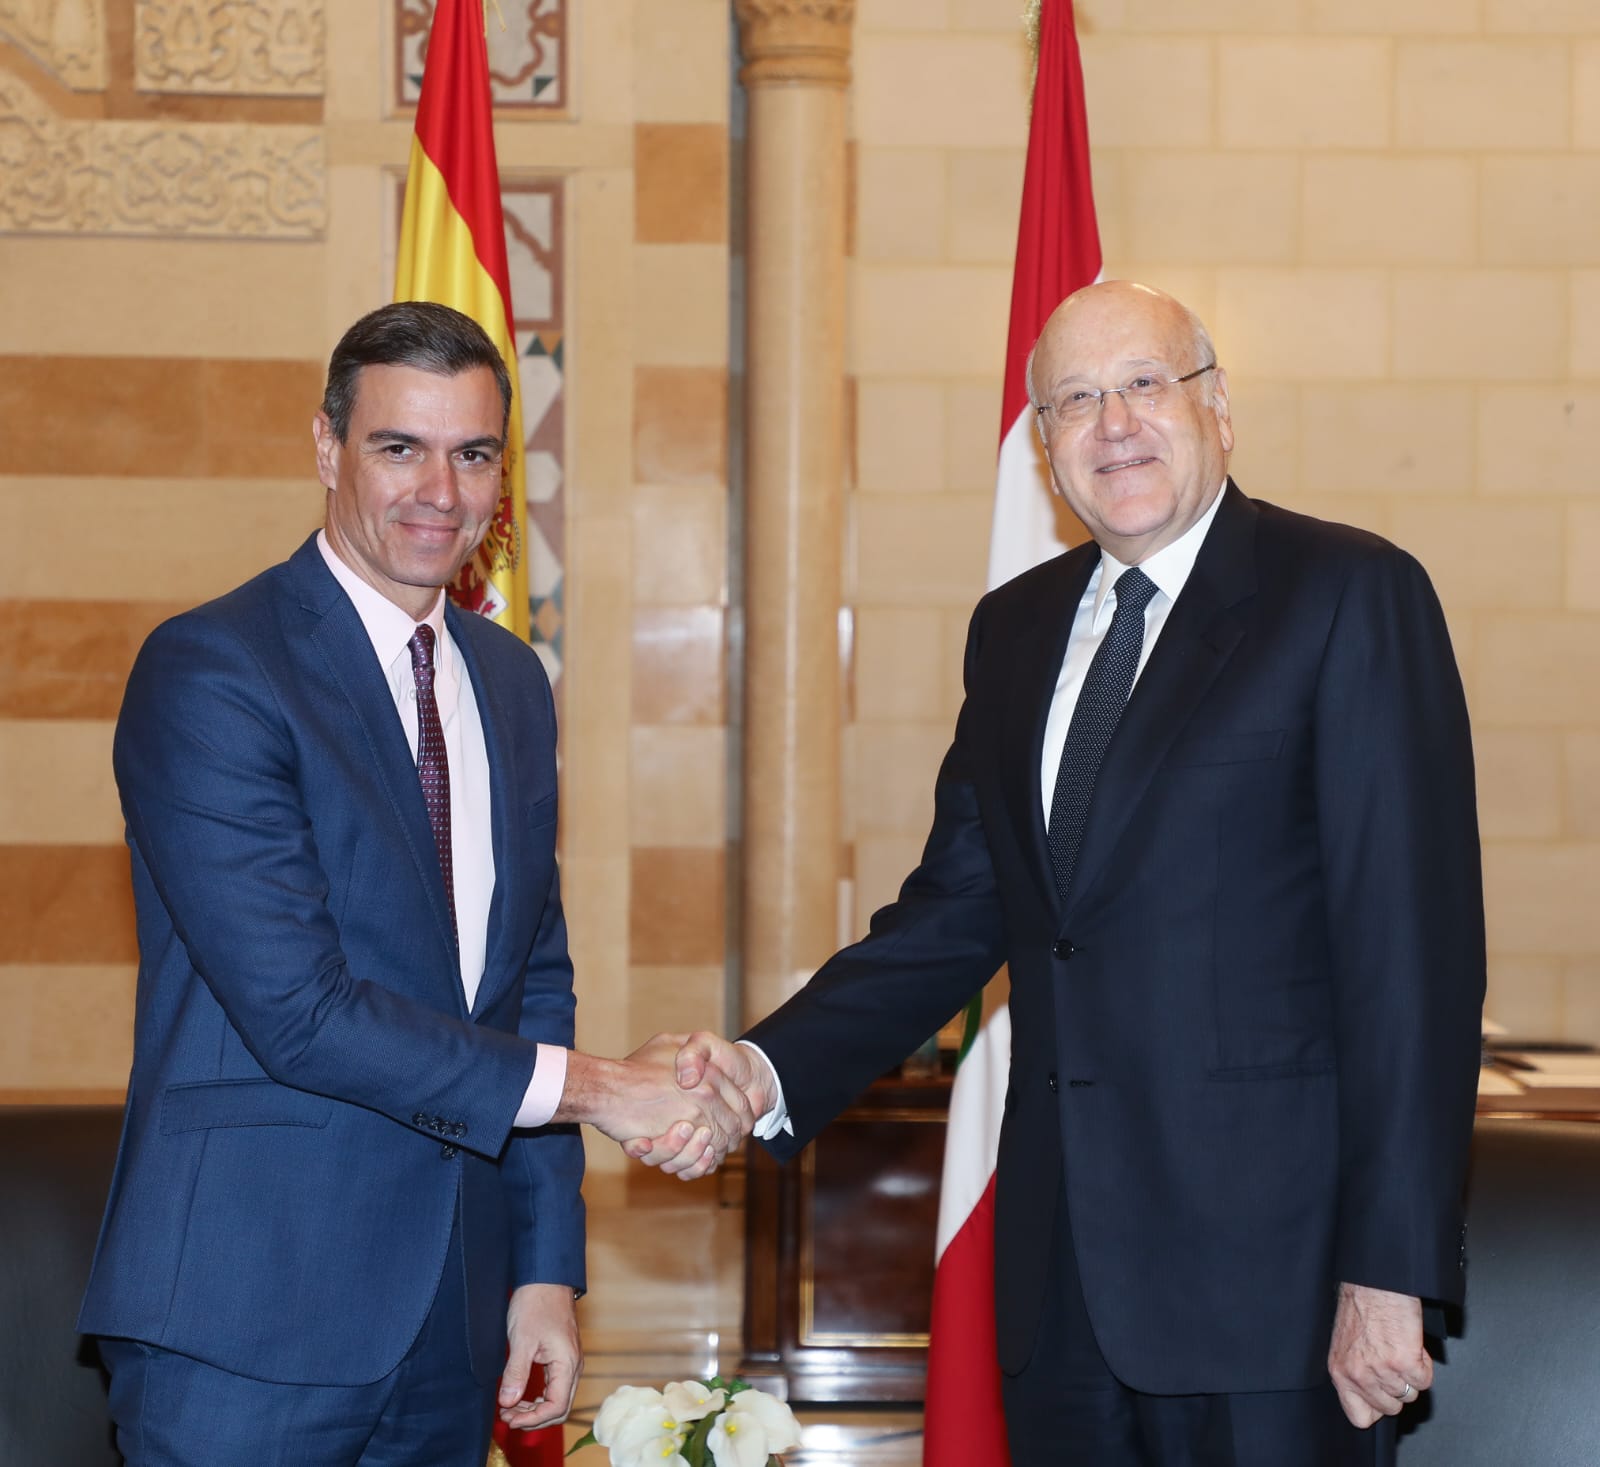 بالصور -وصول رئيس وزراء اسبانيا الى السراي الحكومي وبدء اجتماعه مع رئيس الحكومة نجيب ميقاتي